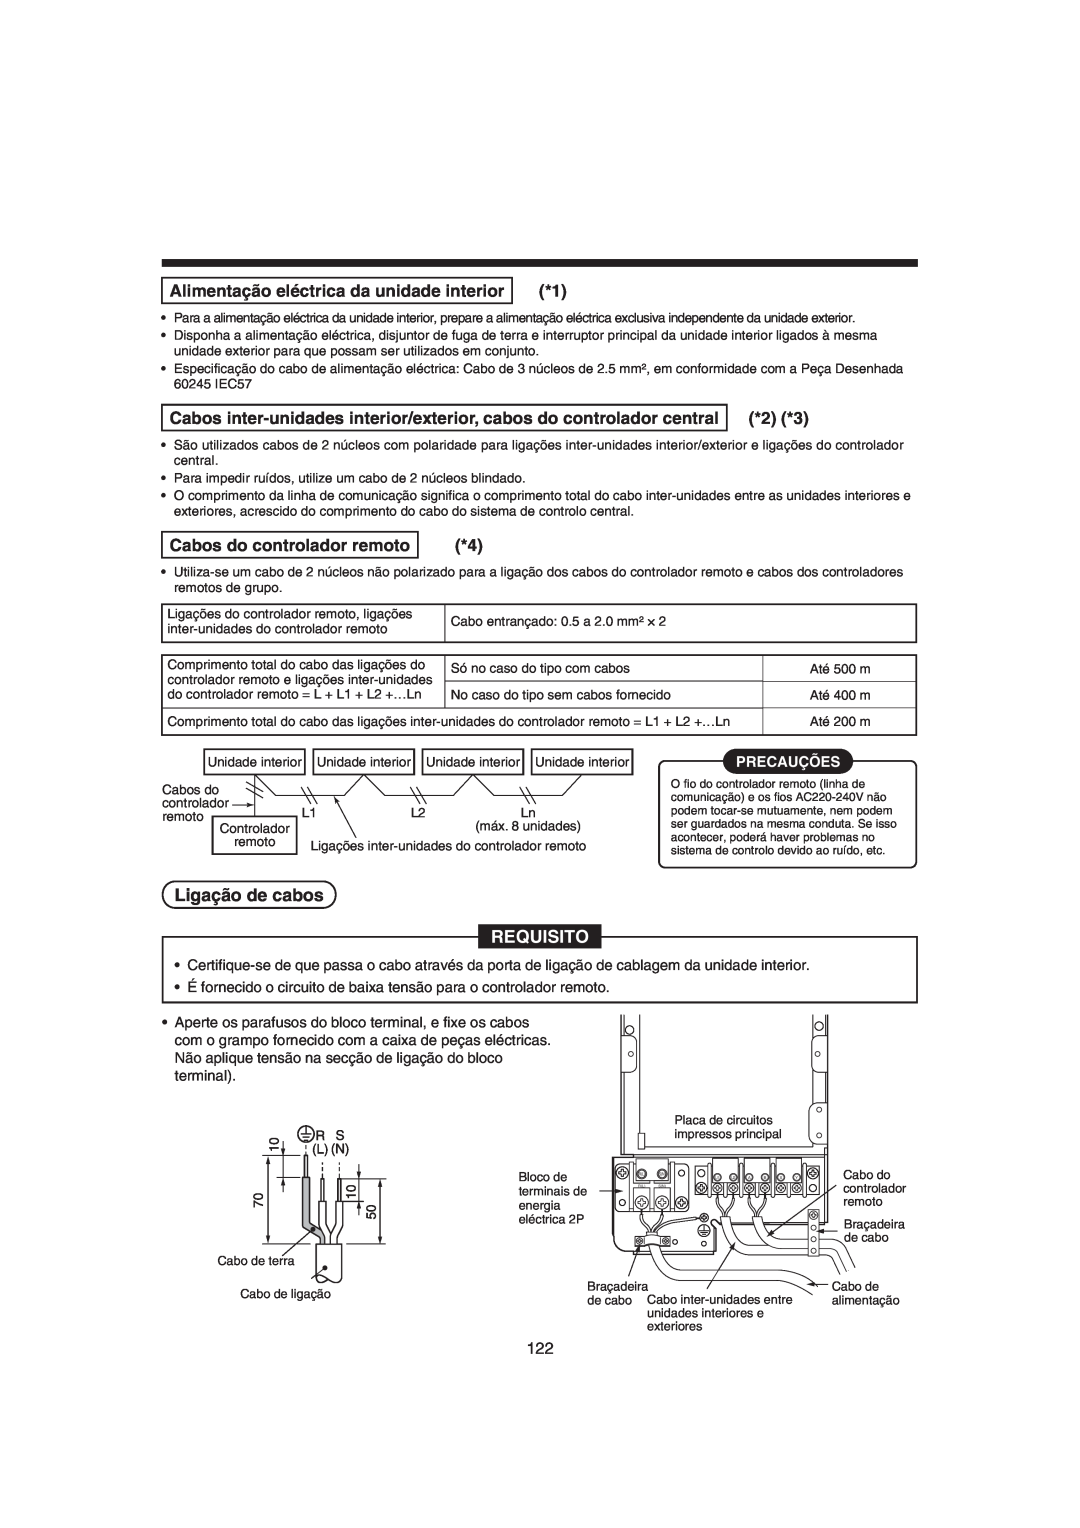 Pentax MMK-AP0071H Ligação de cabos, Alimentação eléctrica da unidade interior, Cabos do controlador remoto, Precauções 